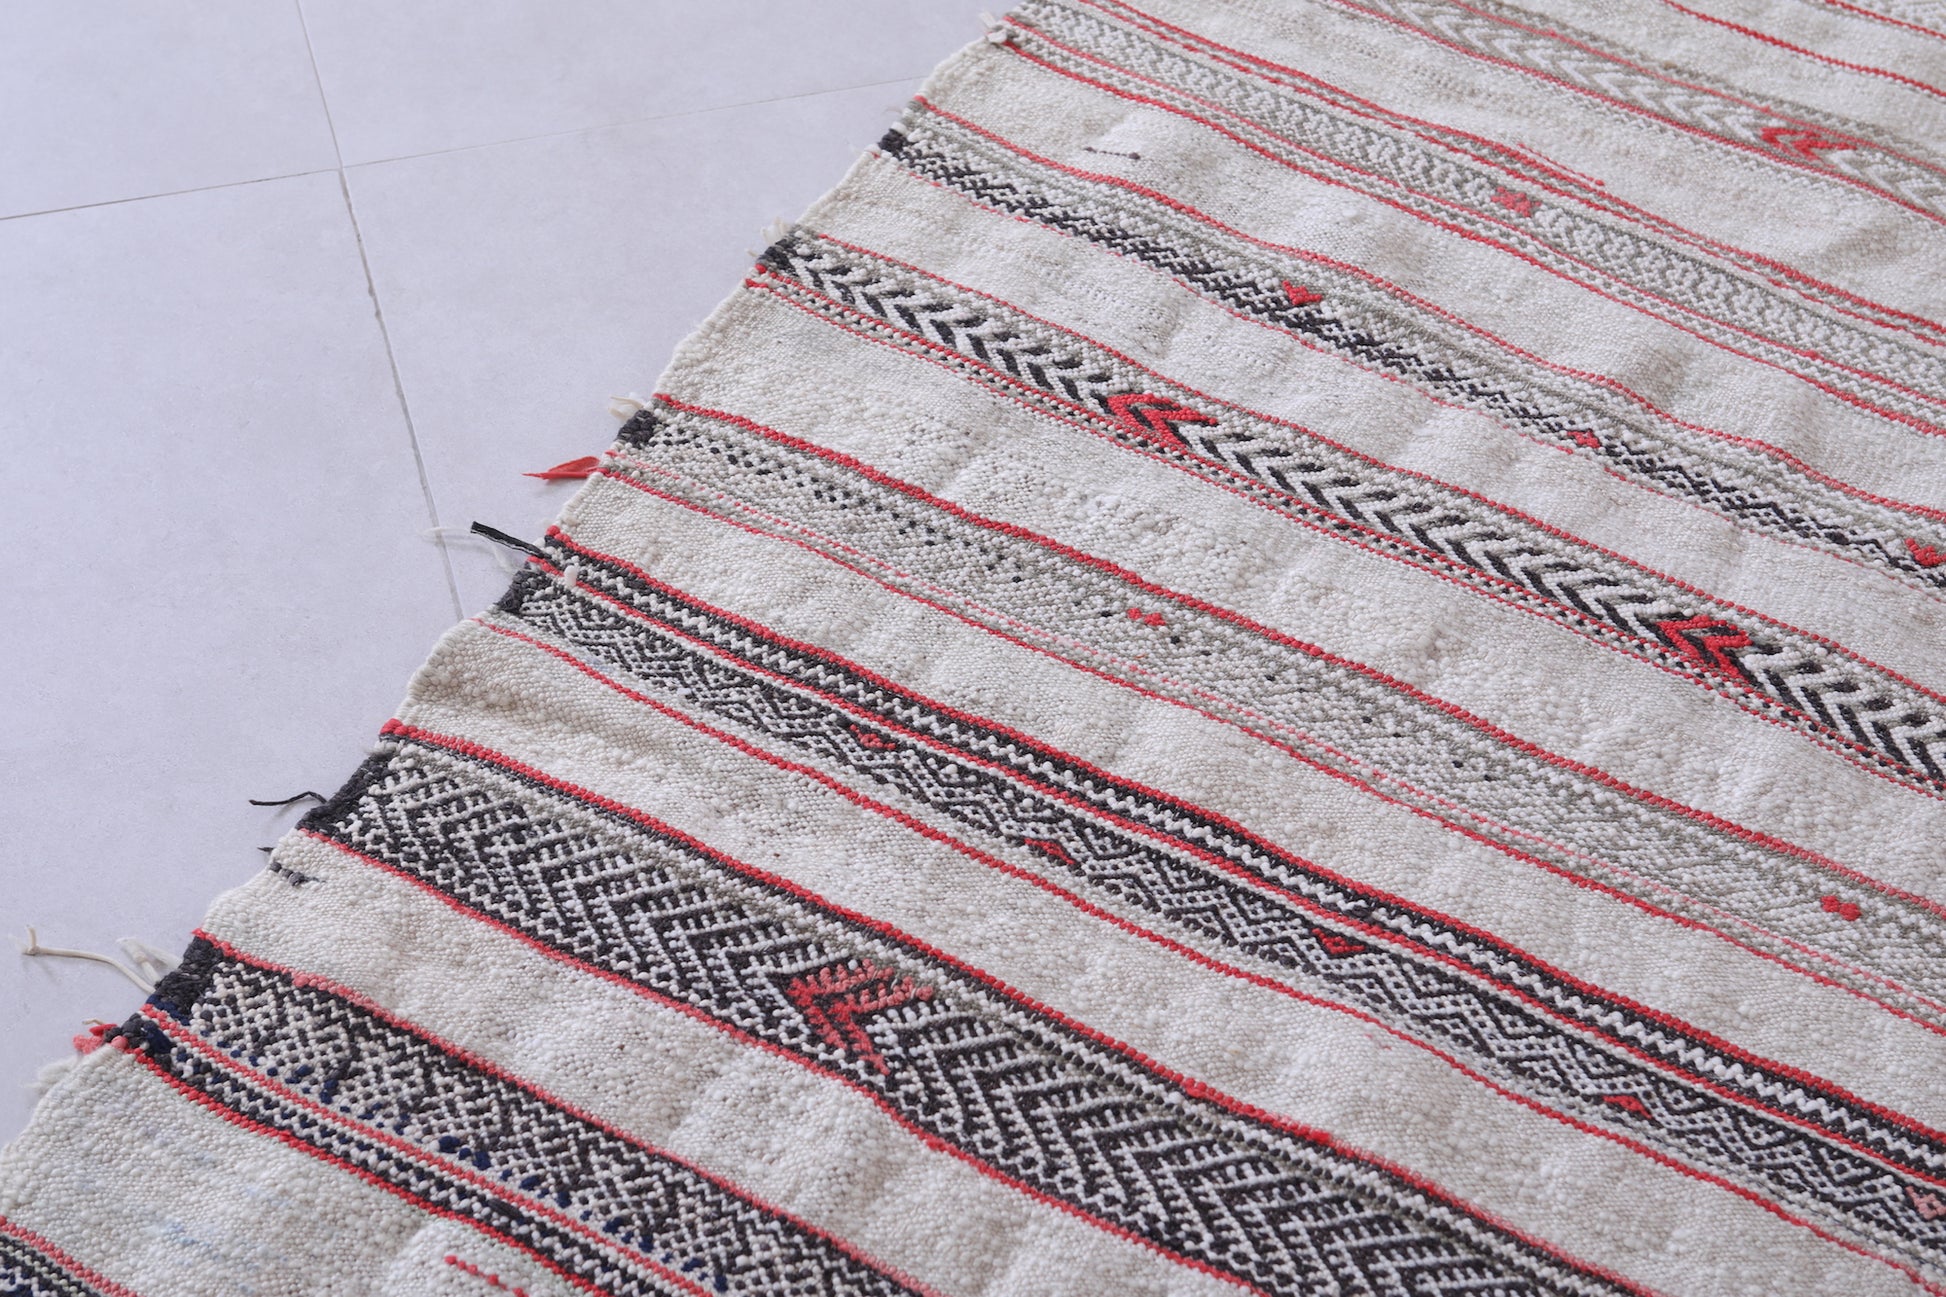 Vintage berber blanket 5.3 X 10.8 Feet